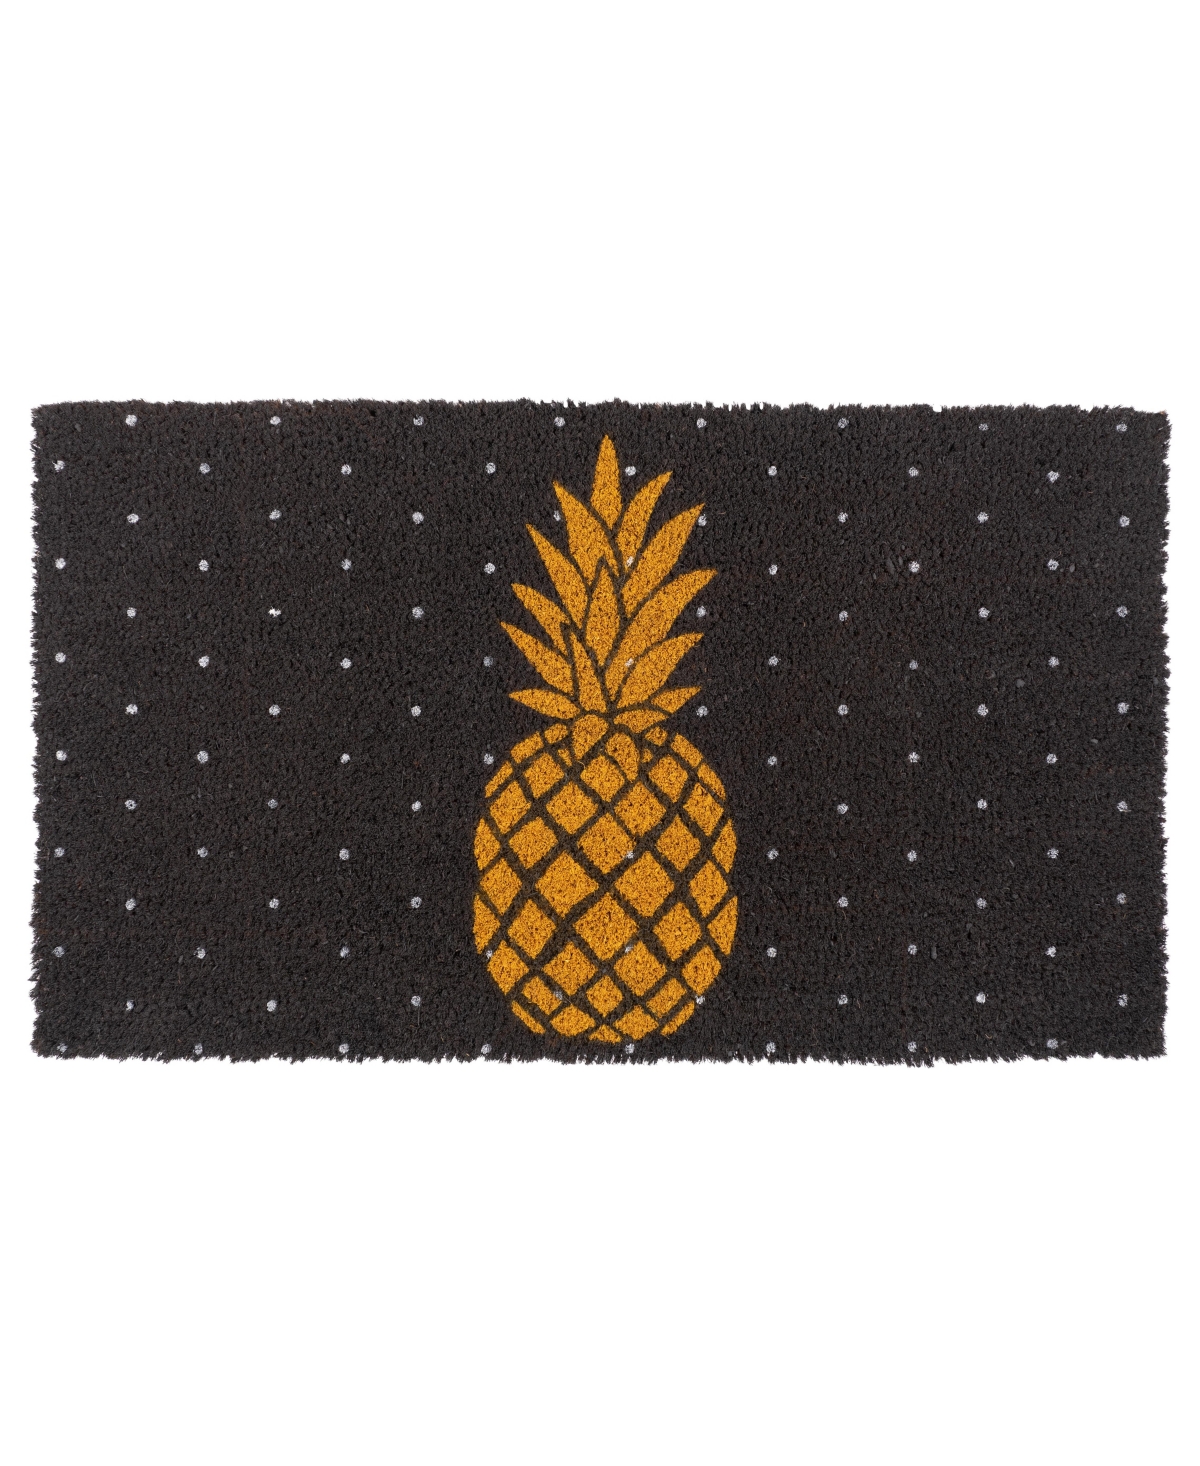 Coir Doormat, Pineapple - Beige